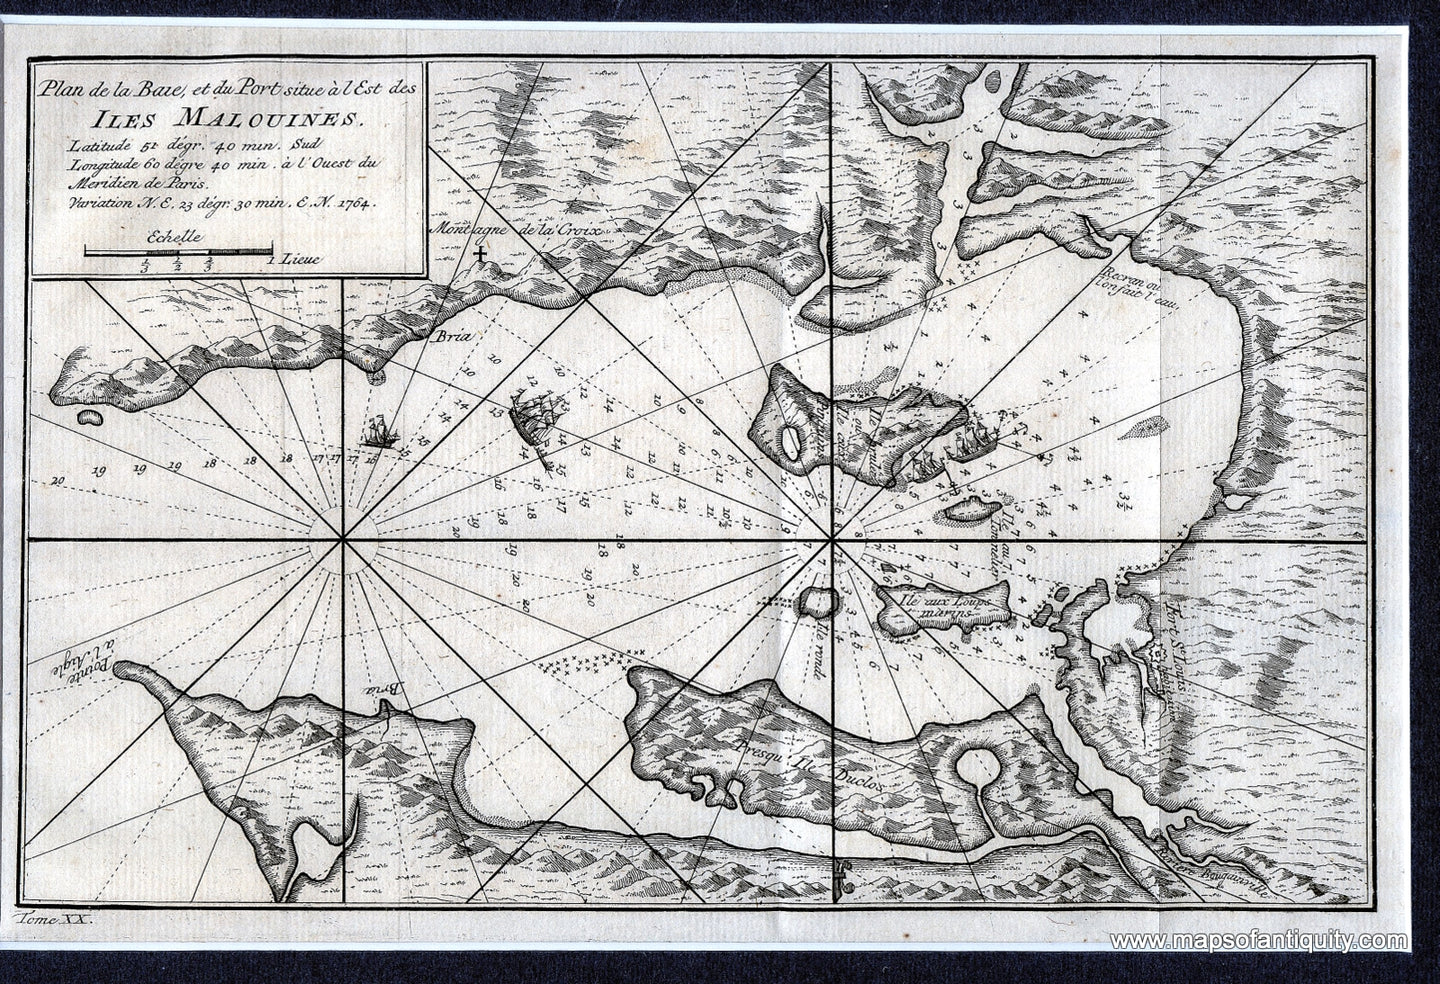 Black-and-White-Antique-Map.-Plan-de-la-Baie-et-du-Port-situe-a-l'Est-des-Iles-Malouines.-South-America--1773-Prevost-Maps-Of-Antiquity